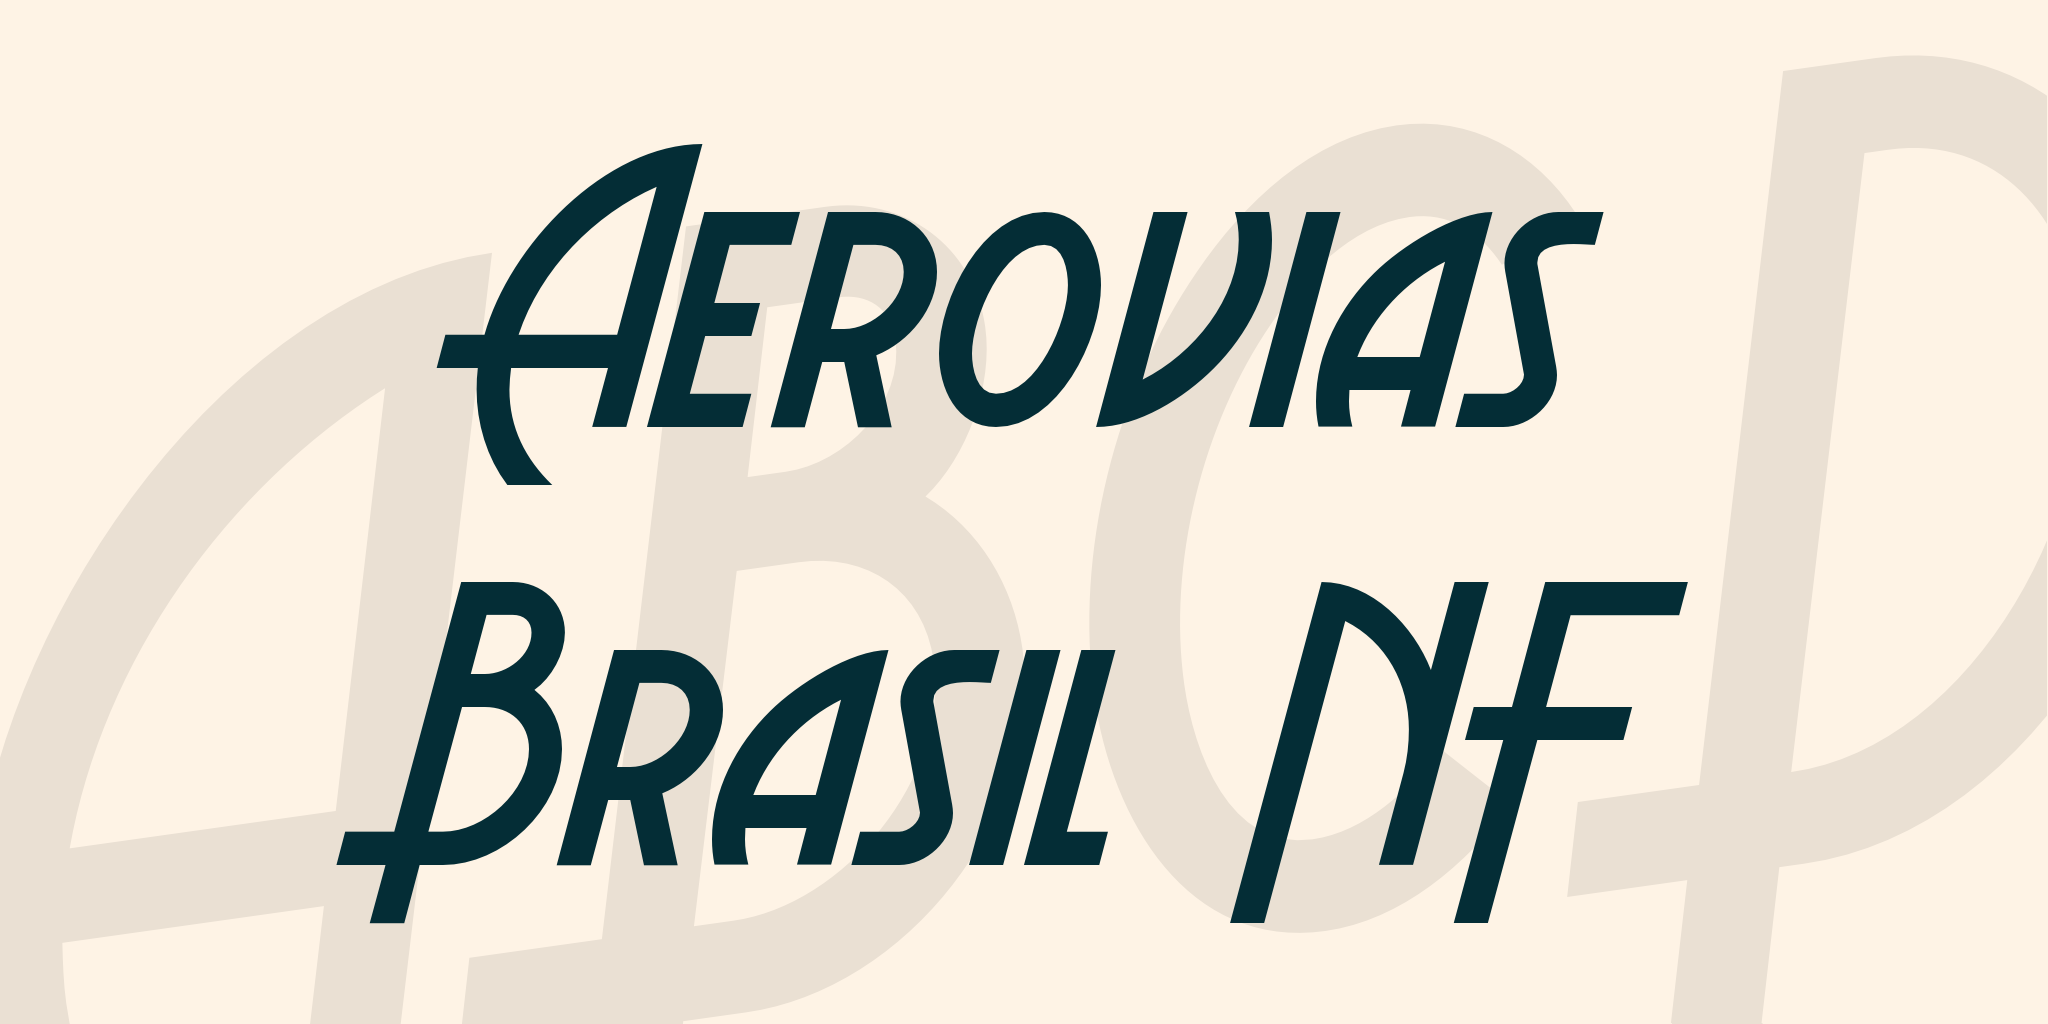 Aerovias Brasil Nf